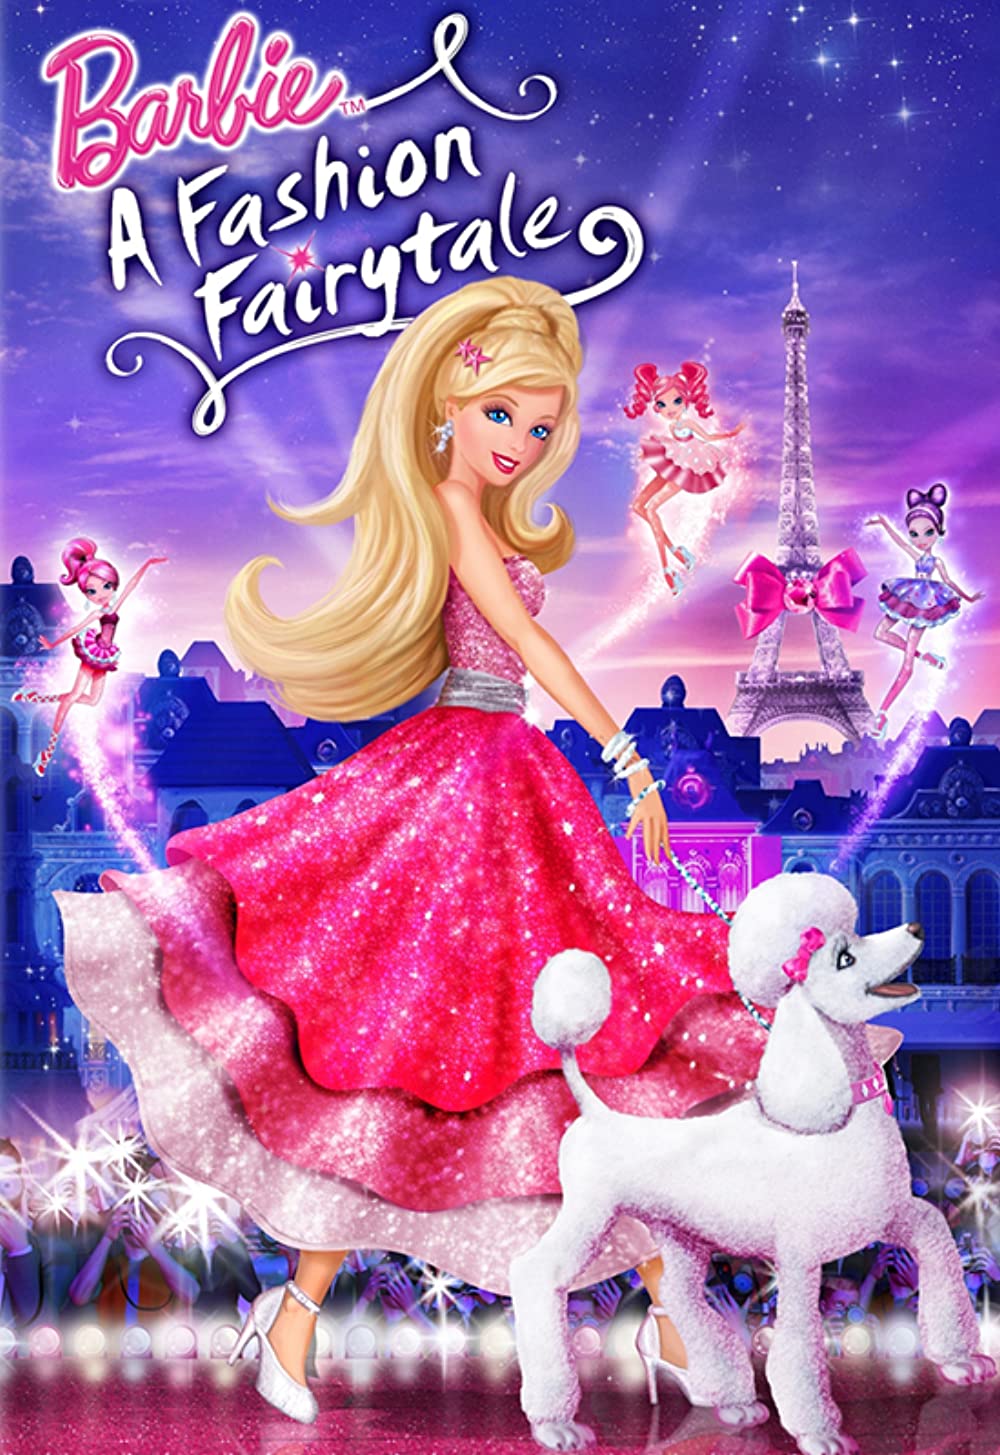 ดูหนังออนไลน์ฟรี Barbie A Fashion Fairytale (2010) บาร์บี้ เทพธิดาแห่งแฟชั่น หนังเต็มเรื่อง หนังมาสเตอร์ ดูหนังHD ดูหนังออนไลน์ ดูหนังใหม่